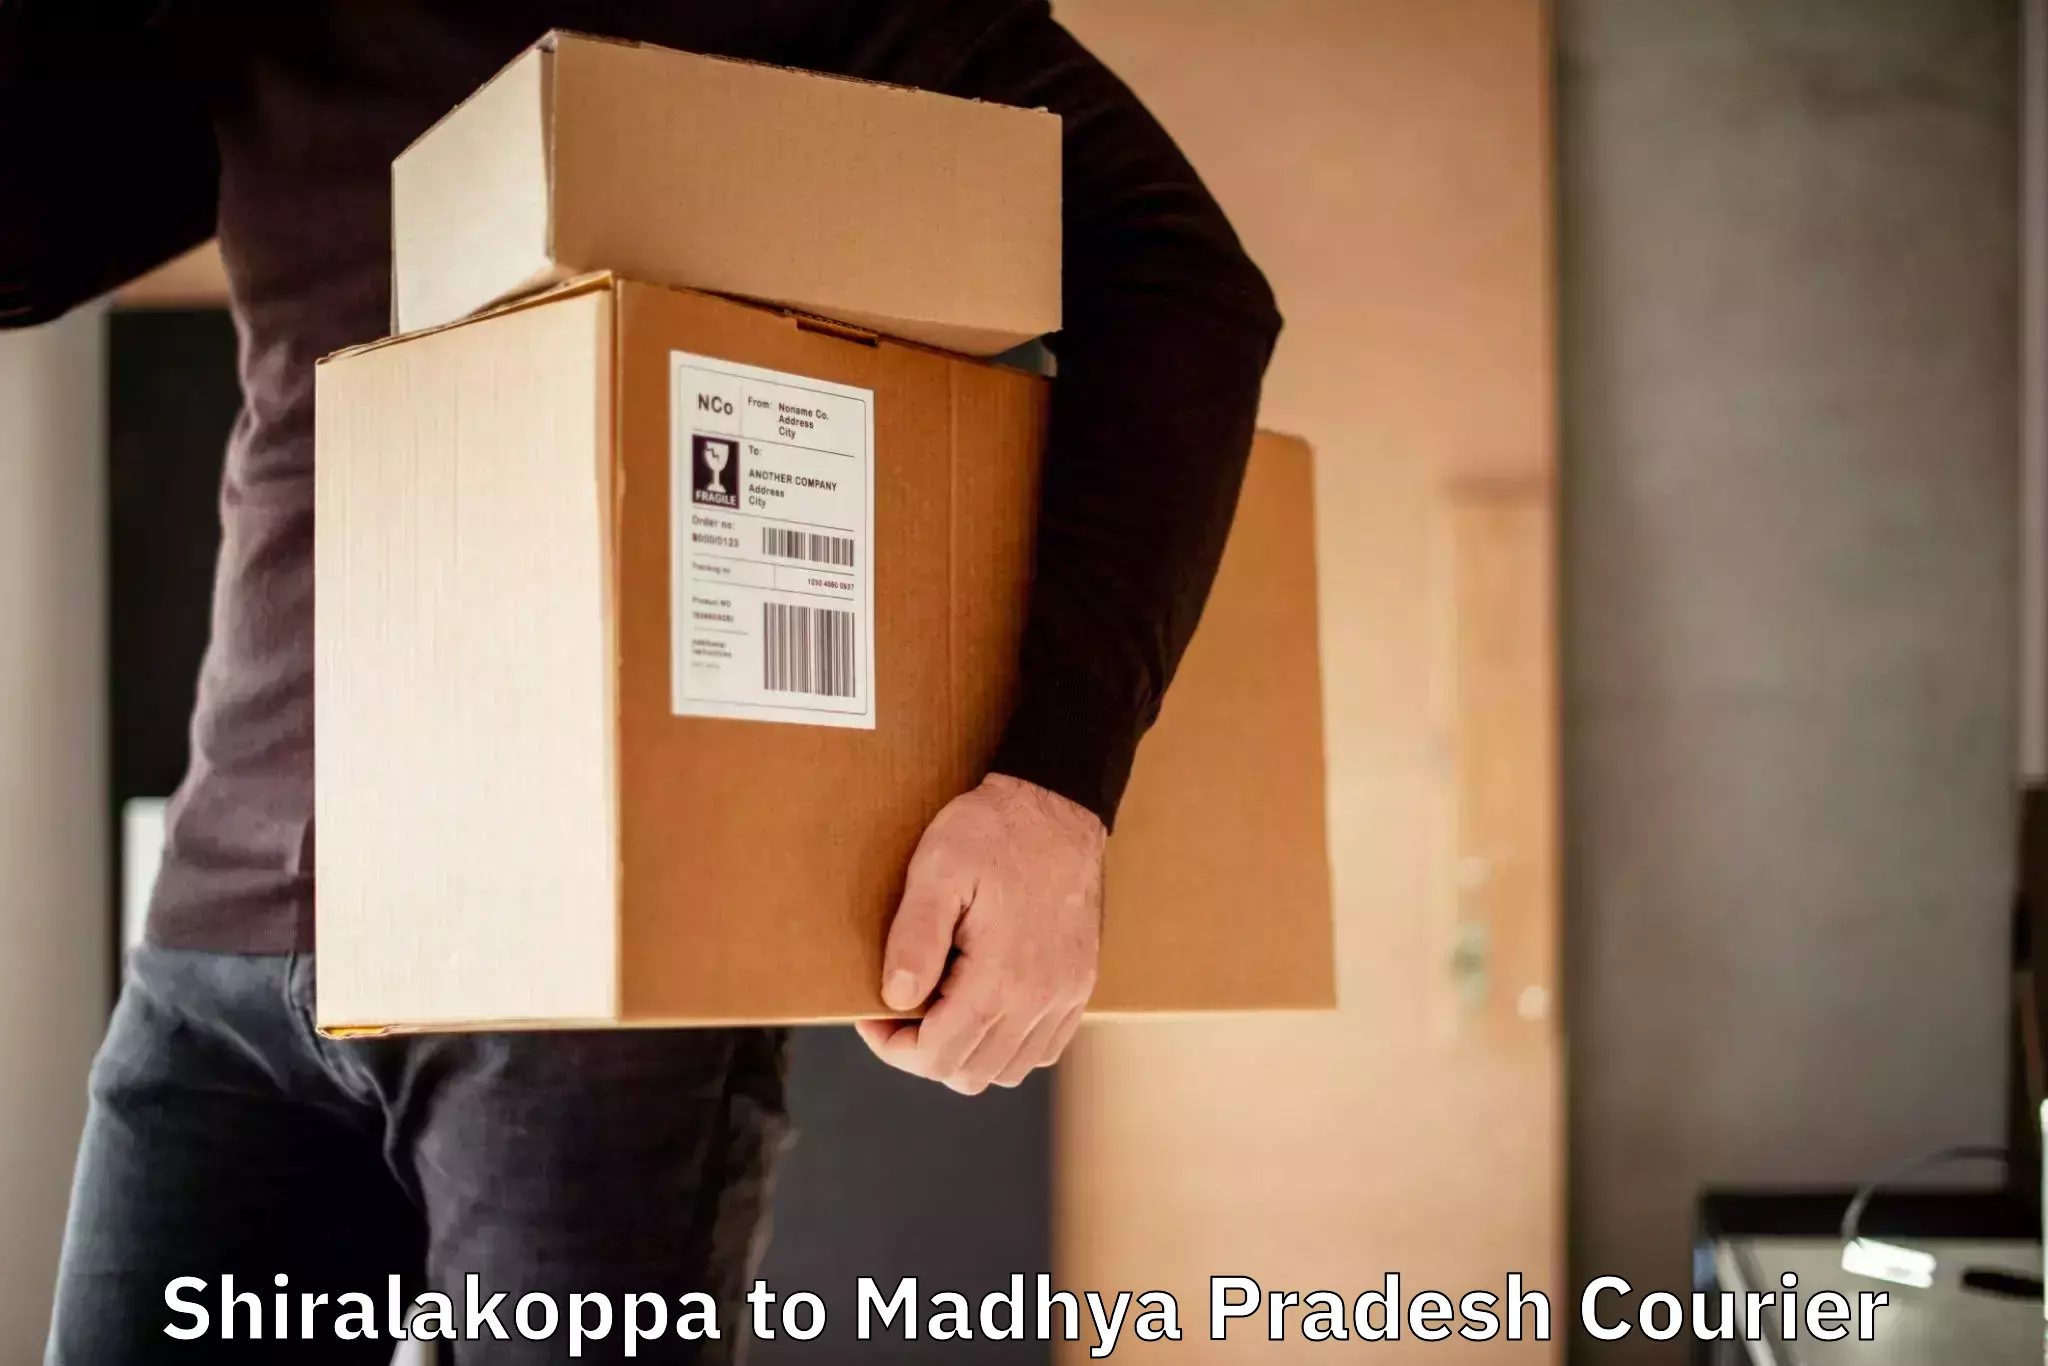 24-hour courier service Shiralakoppa to Madhya Pradesh